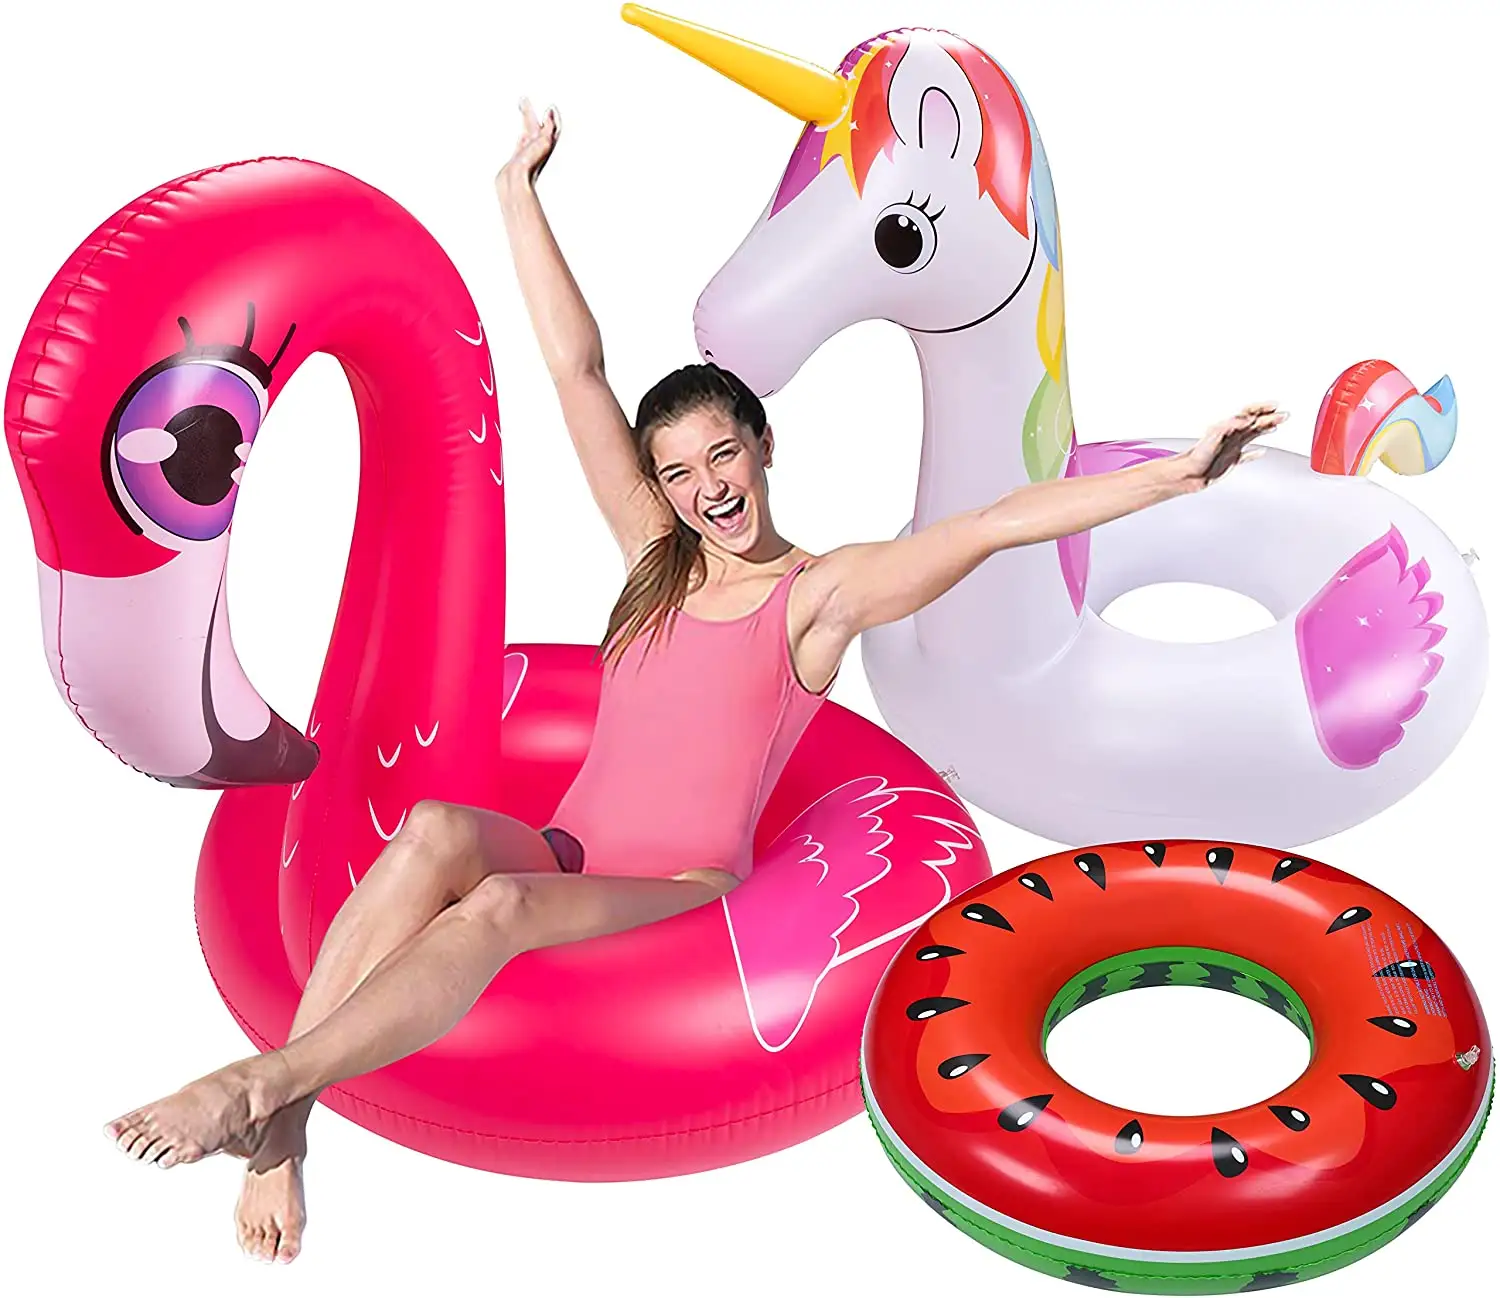 3 adet havuz yüzen yetişkin Set - Unicorn + Flamingo + karpuz şişme plaj yüzme simidi oyuncaklar yetişkinler için, çocuklar